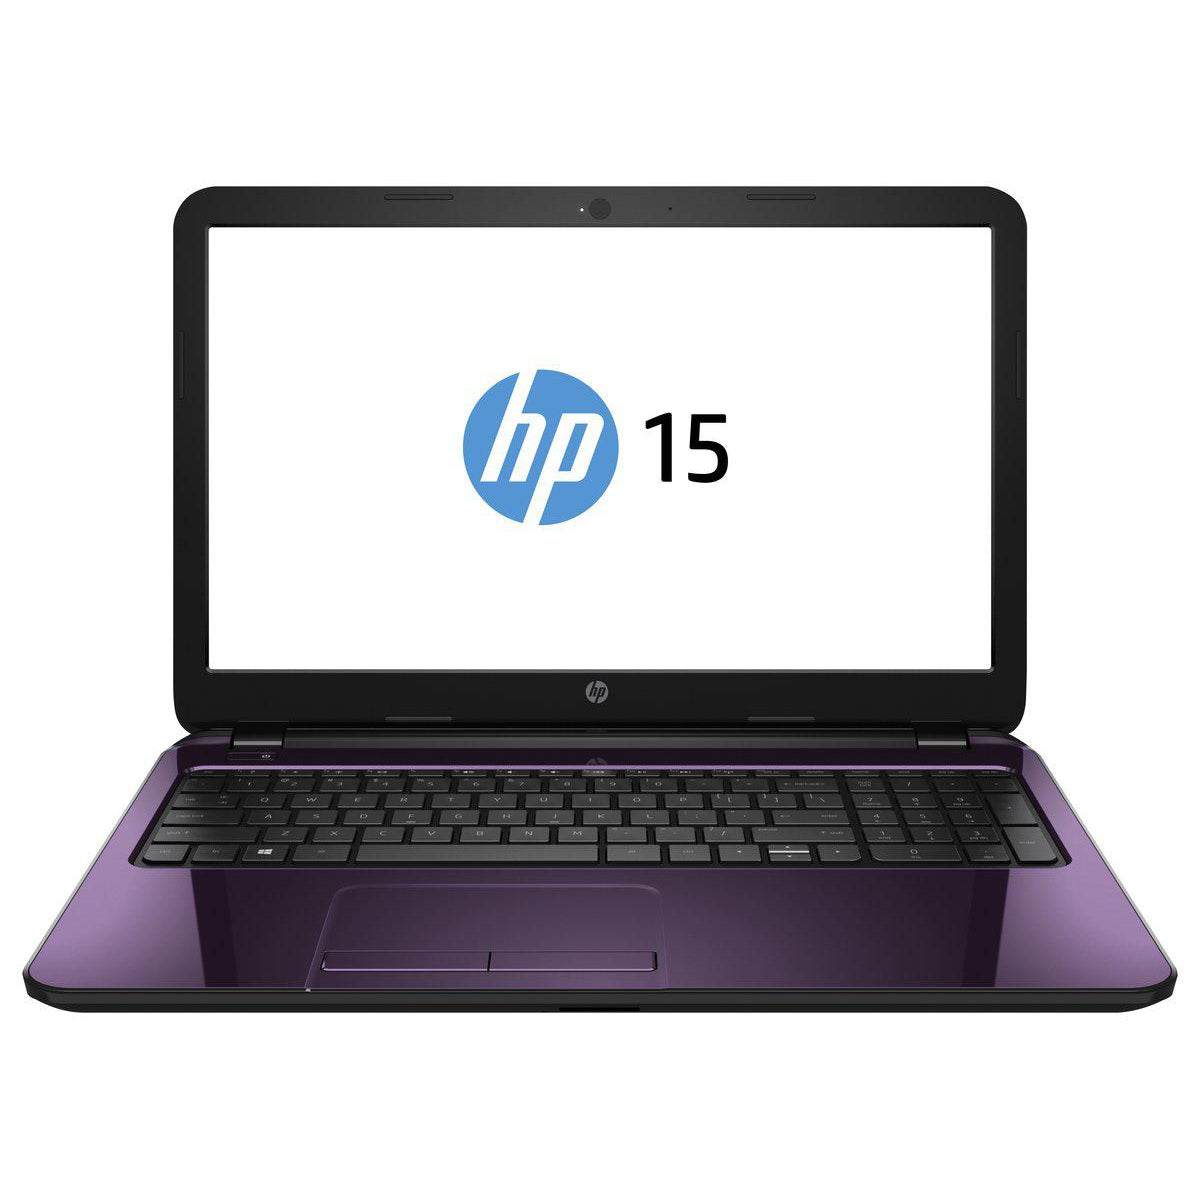 HP 15-R208NA, Intel Core I3-4005U, 8GB Ram, 1TB HDD, Windows 10 (L2U21EA#ABU) - Purple